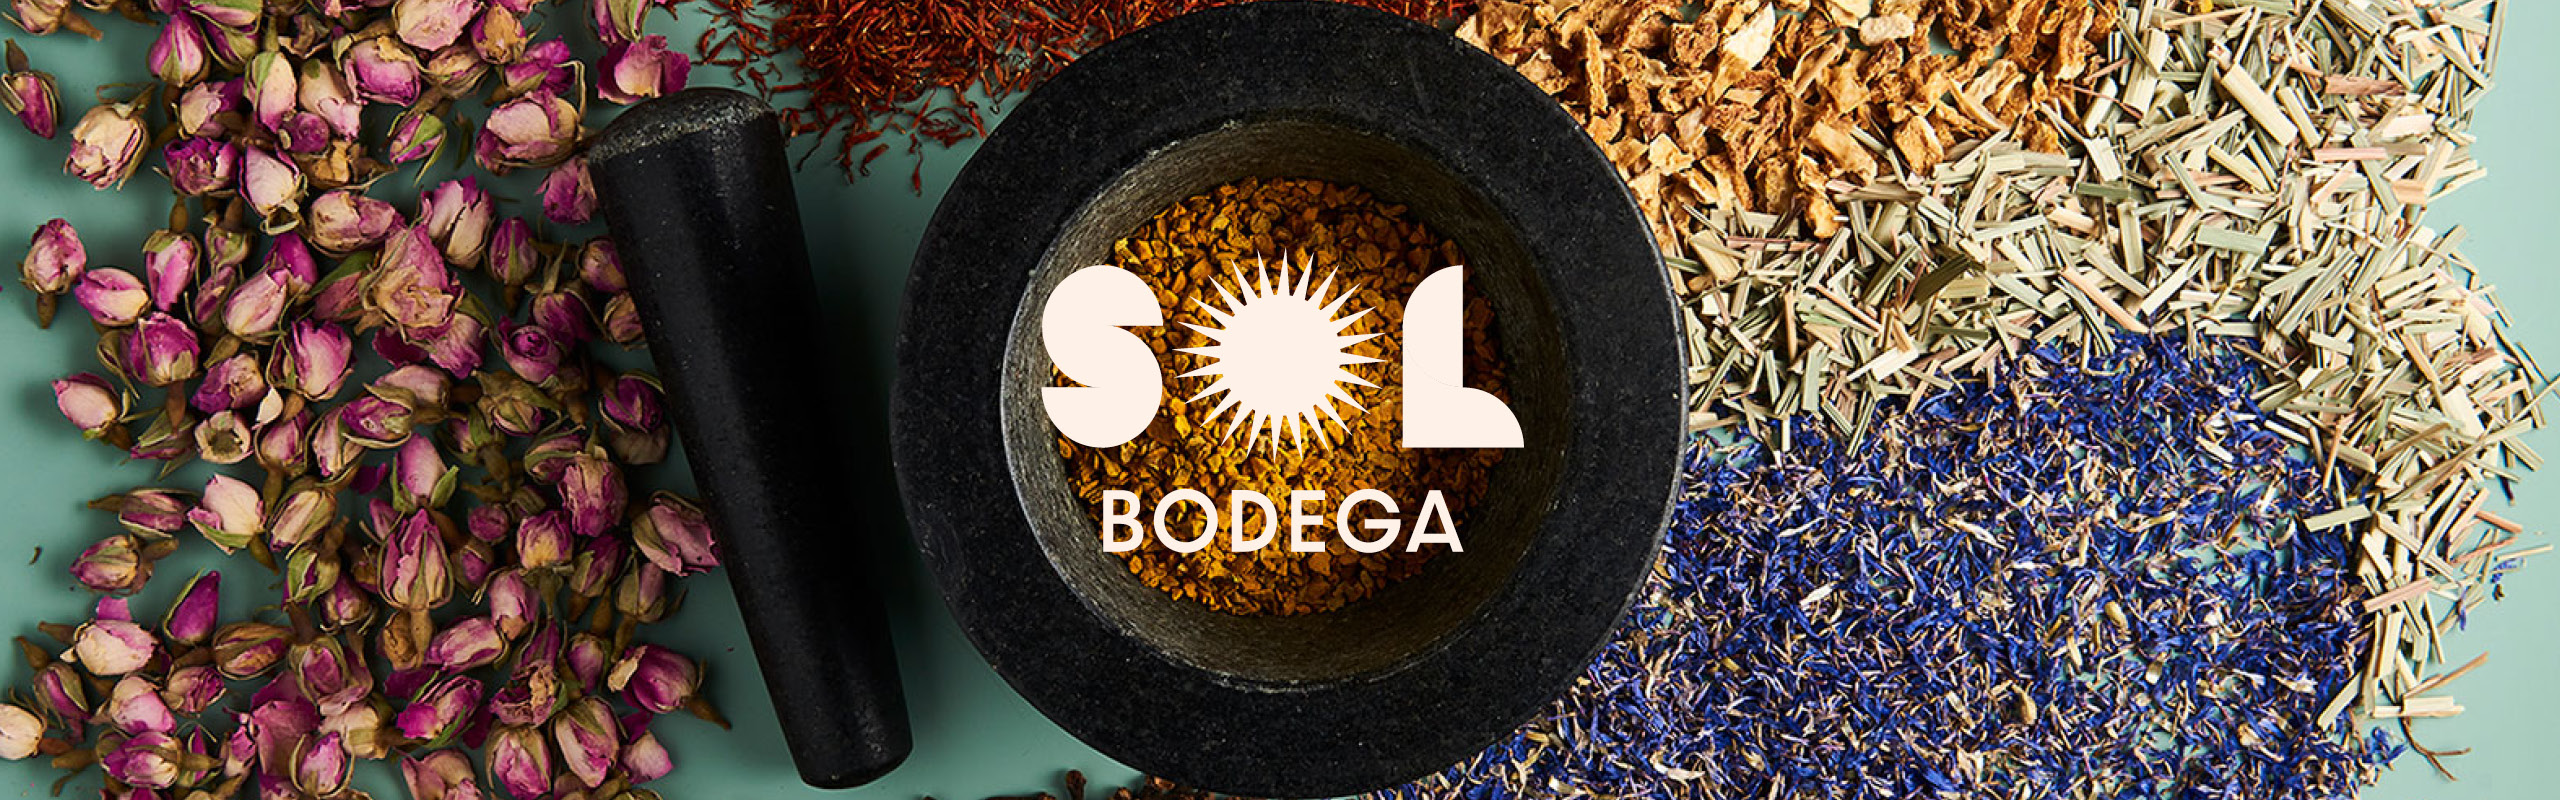 sol-bodega-portfolio-feature